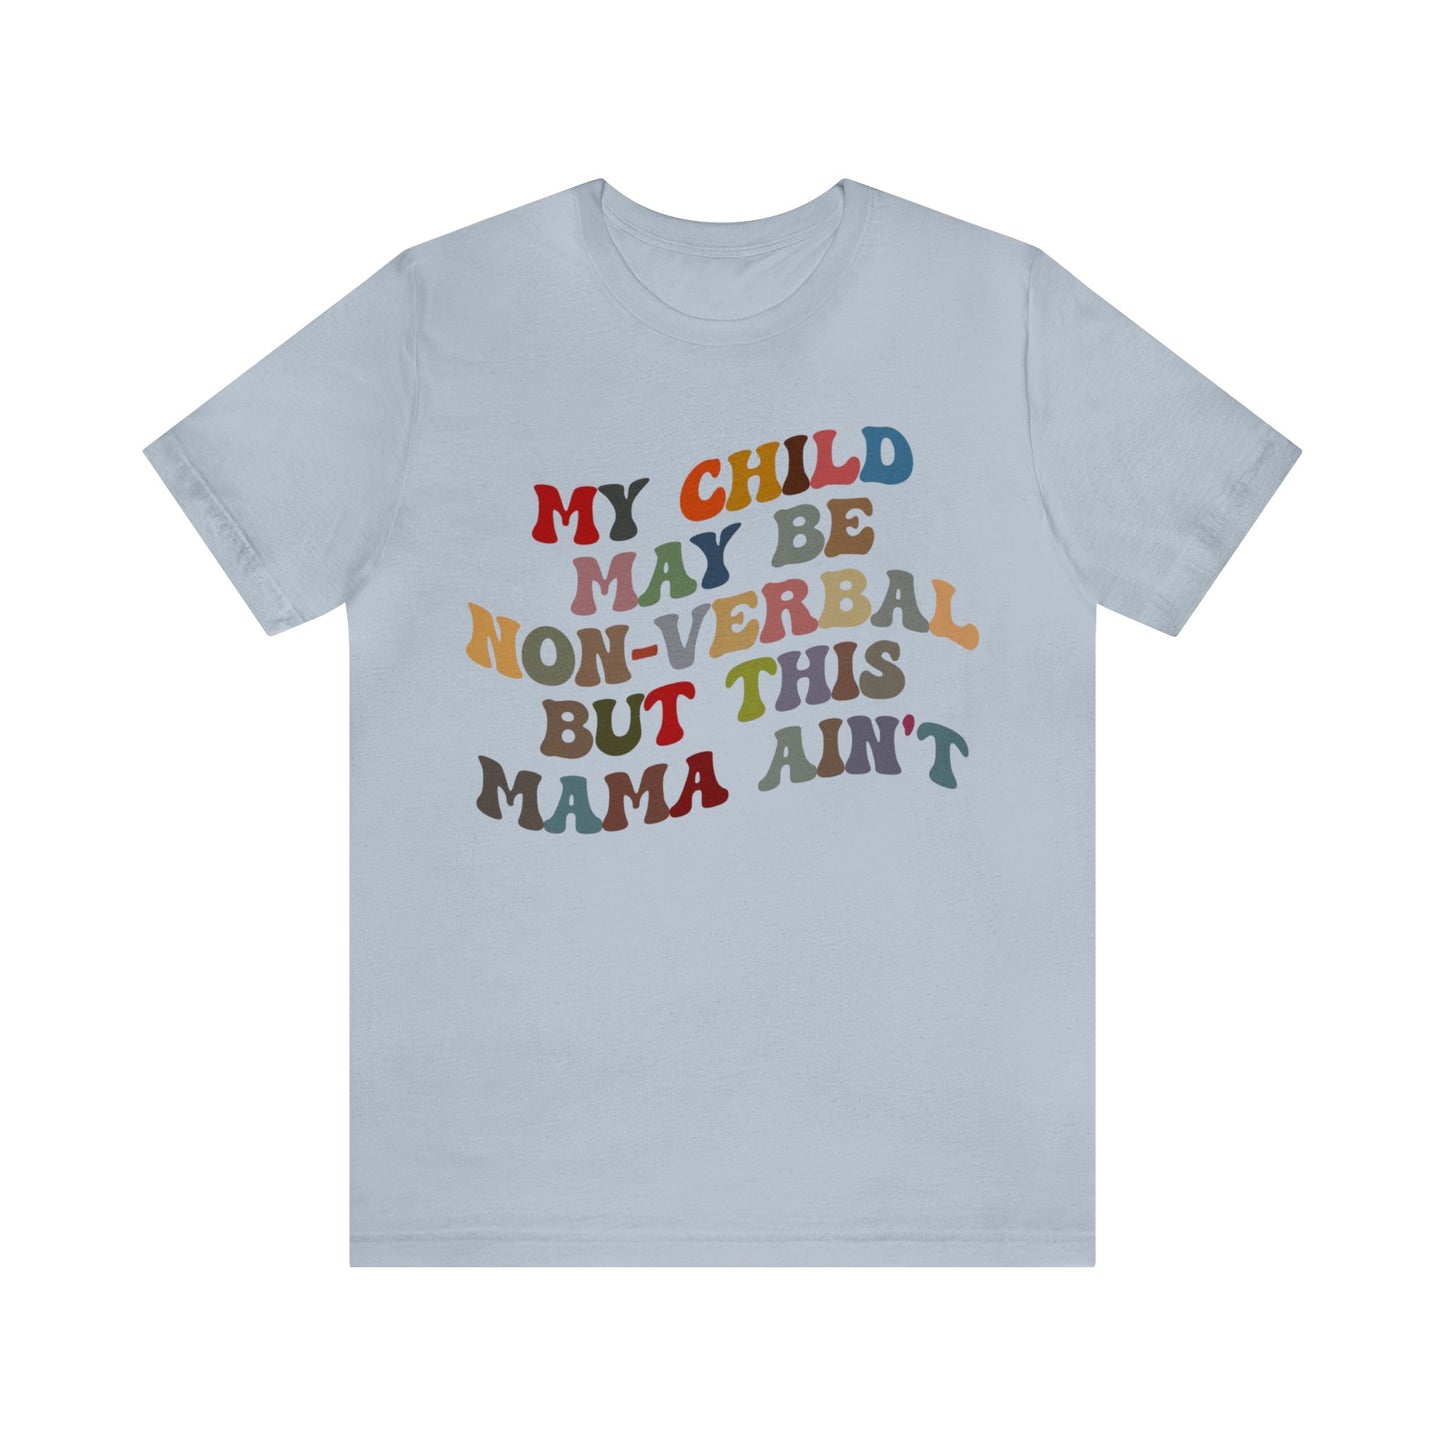 My Child May Be Nonverbal But His Mama Ain't Shirt, Non-verbal Kid Mama Shirt, Autism Awareness Shirt Autism Mom Shirt for Mama, T1464